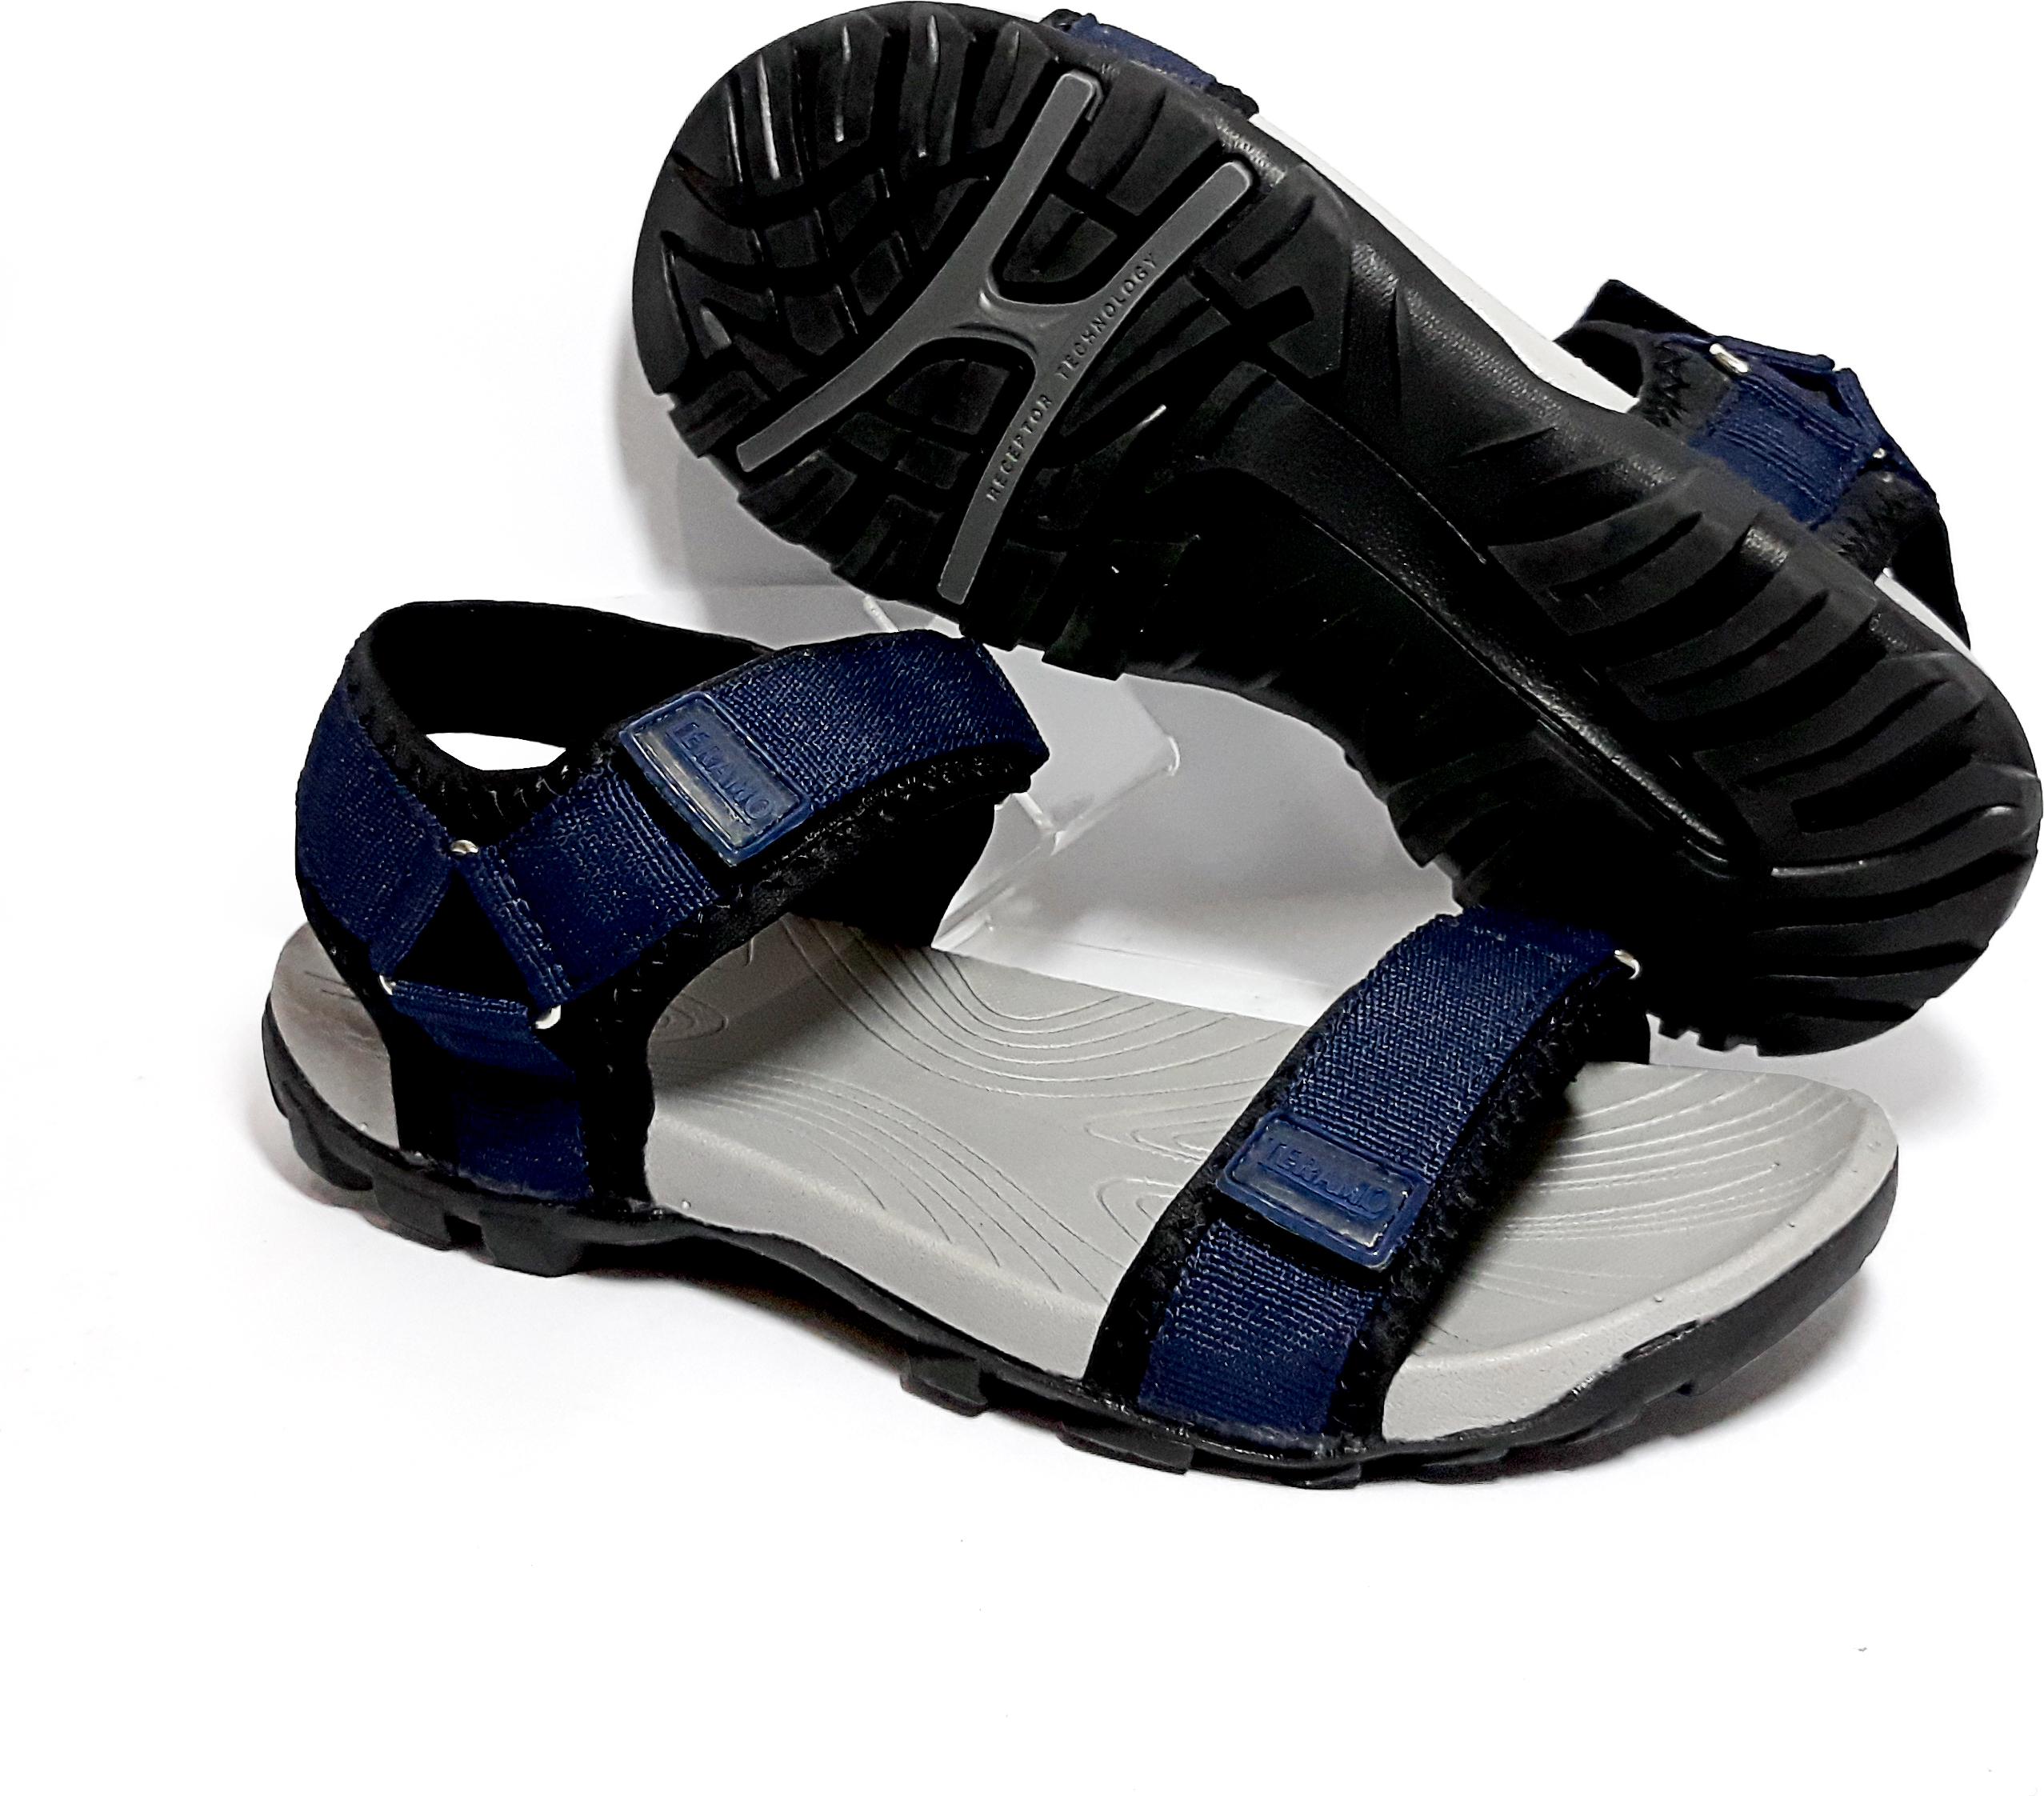 Giày sandal,dép sandal quai ngang, vải dù chắc chắn, đế cao su nguyên chất 100% có rãnh chống trượt an toàn trm.001